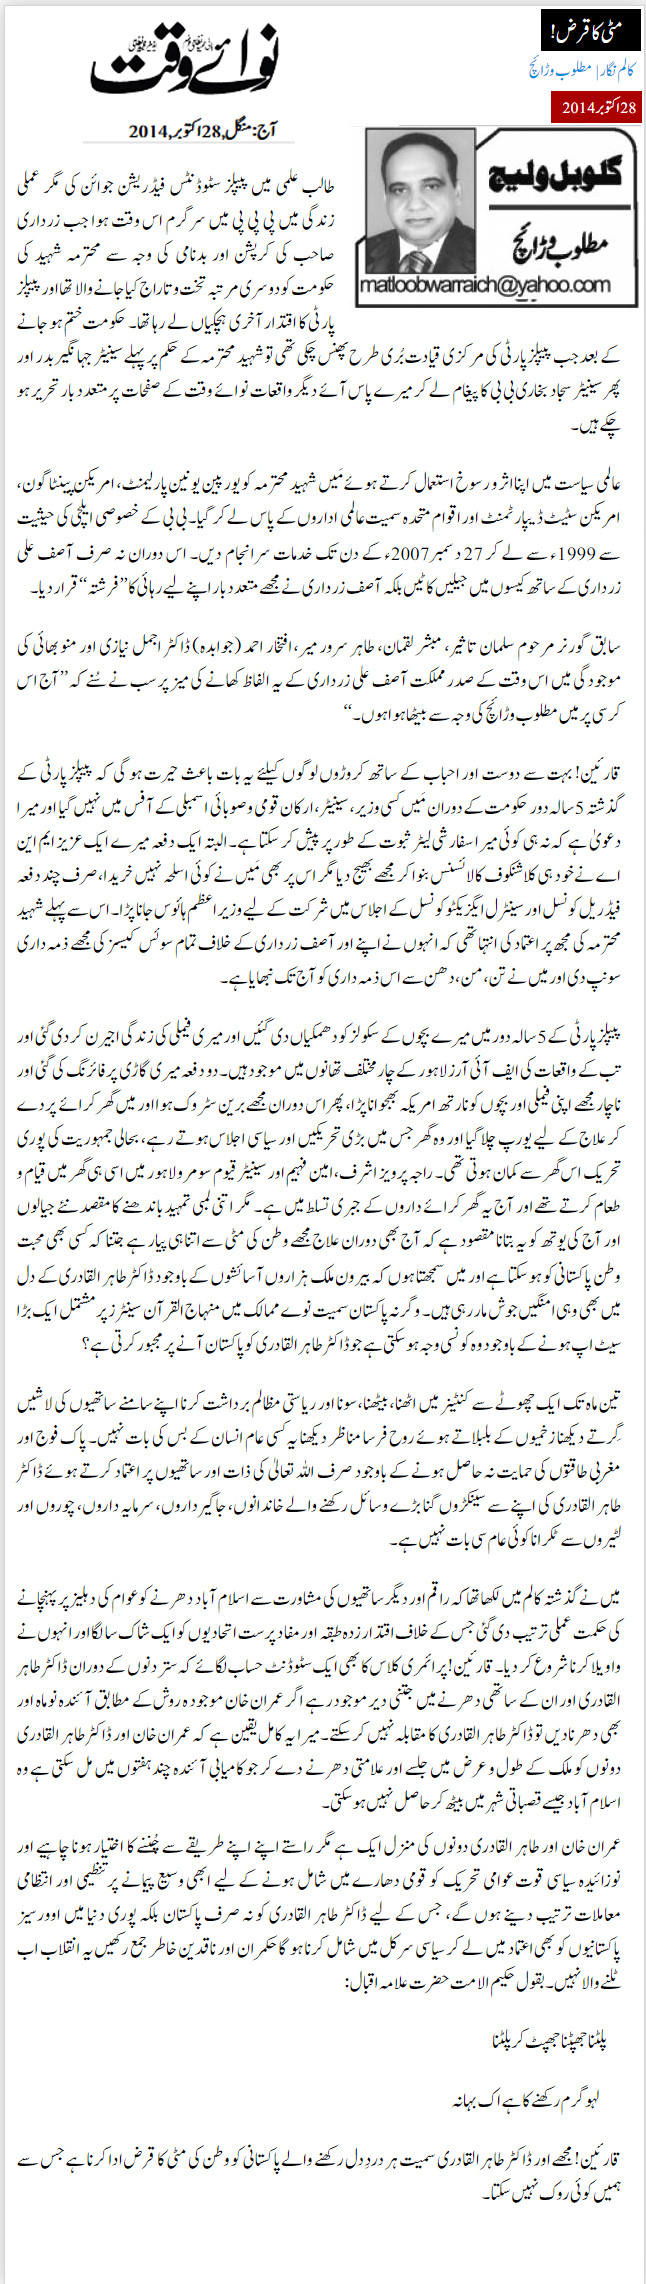 Minhaj-ul-Quran  Print Media Coverage Daily Nawa i Waqt - Matloob Warraich